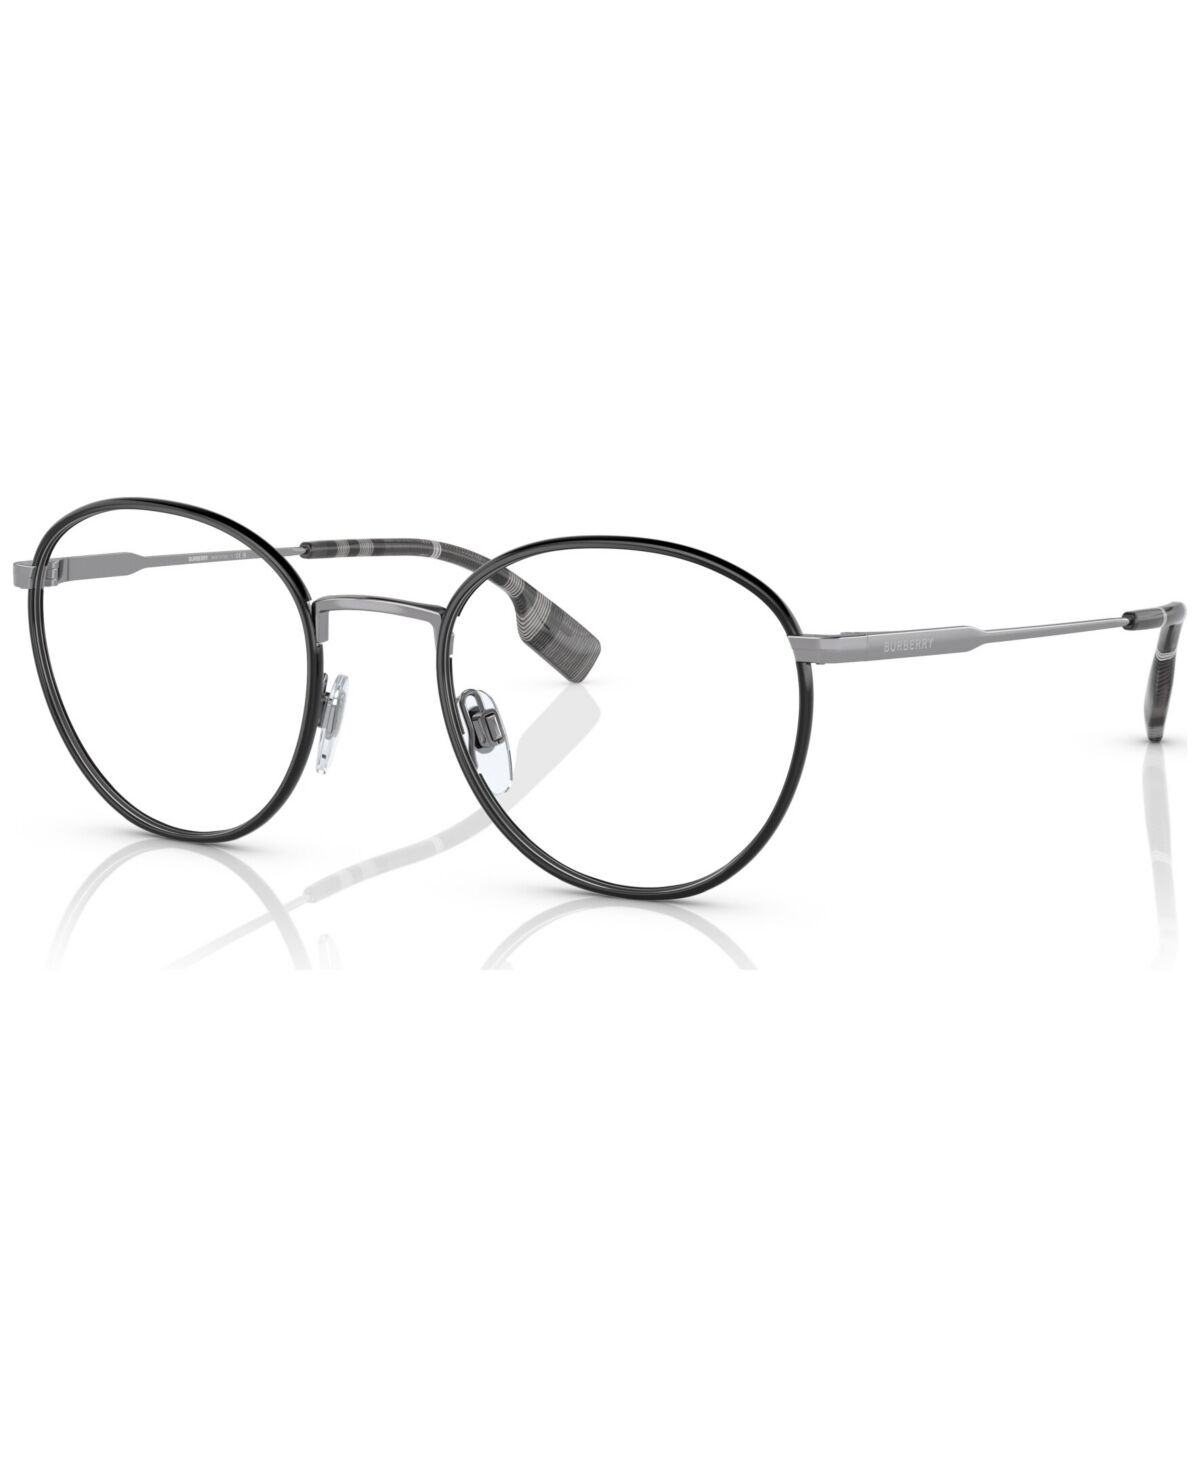 Burberry Men's Hugo Eyeglasses, BE1373 51 - Gunmetal, Black